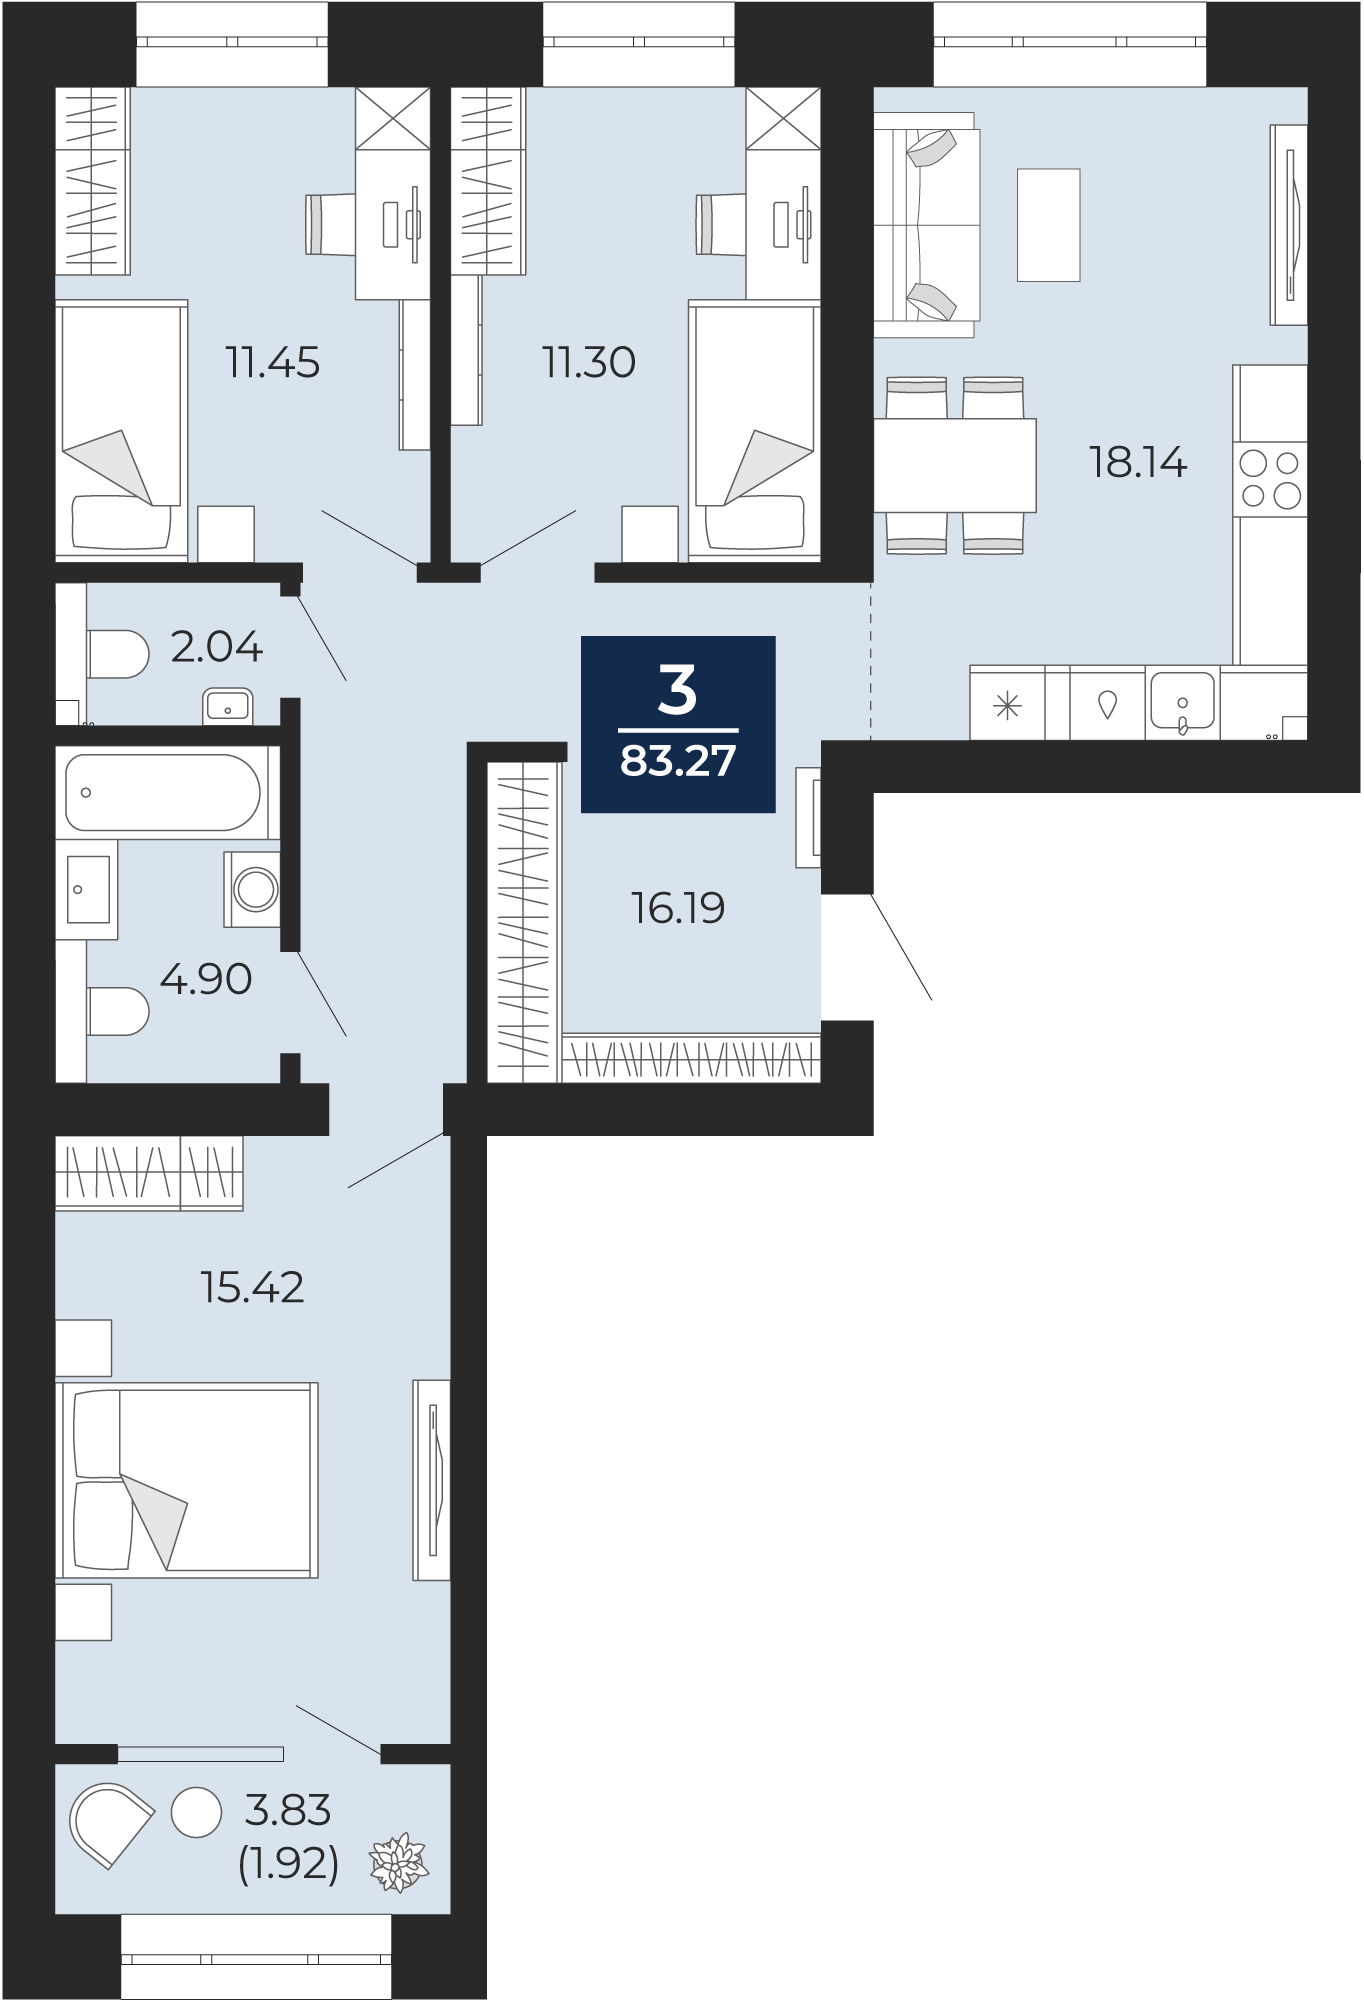 Квартира № 127, 3-комнатная, 83.27 кв. м, 10 этаж